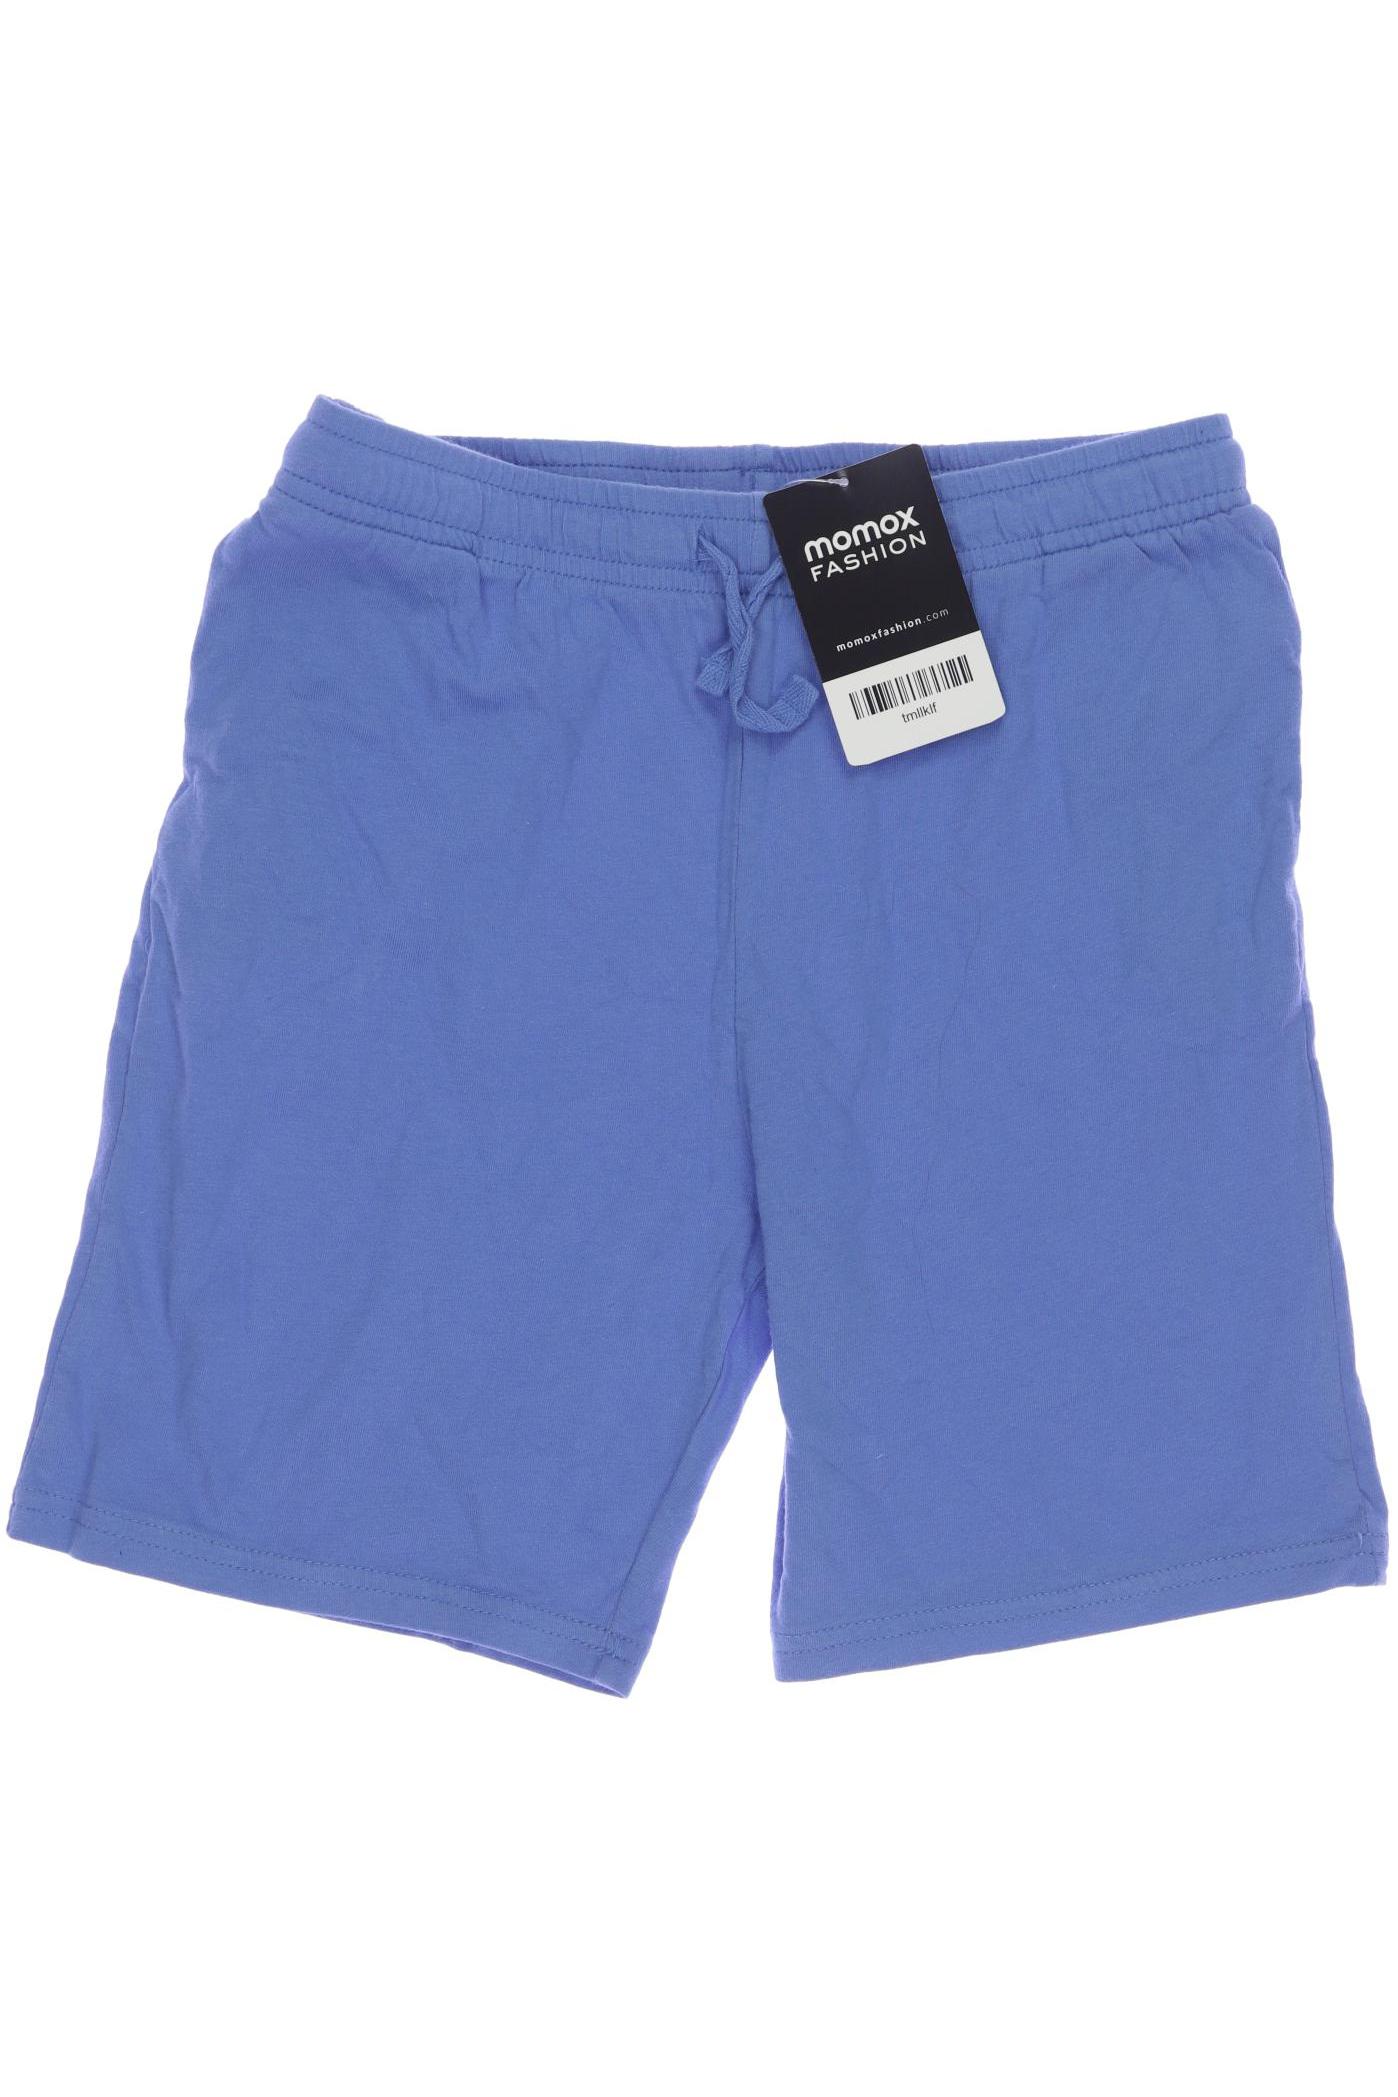 H&M Herren Shorts, blau, Gr. 140 von H&M